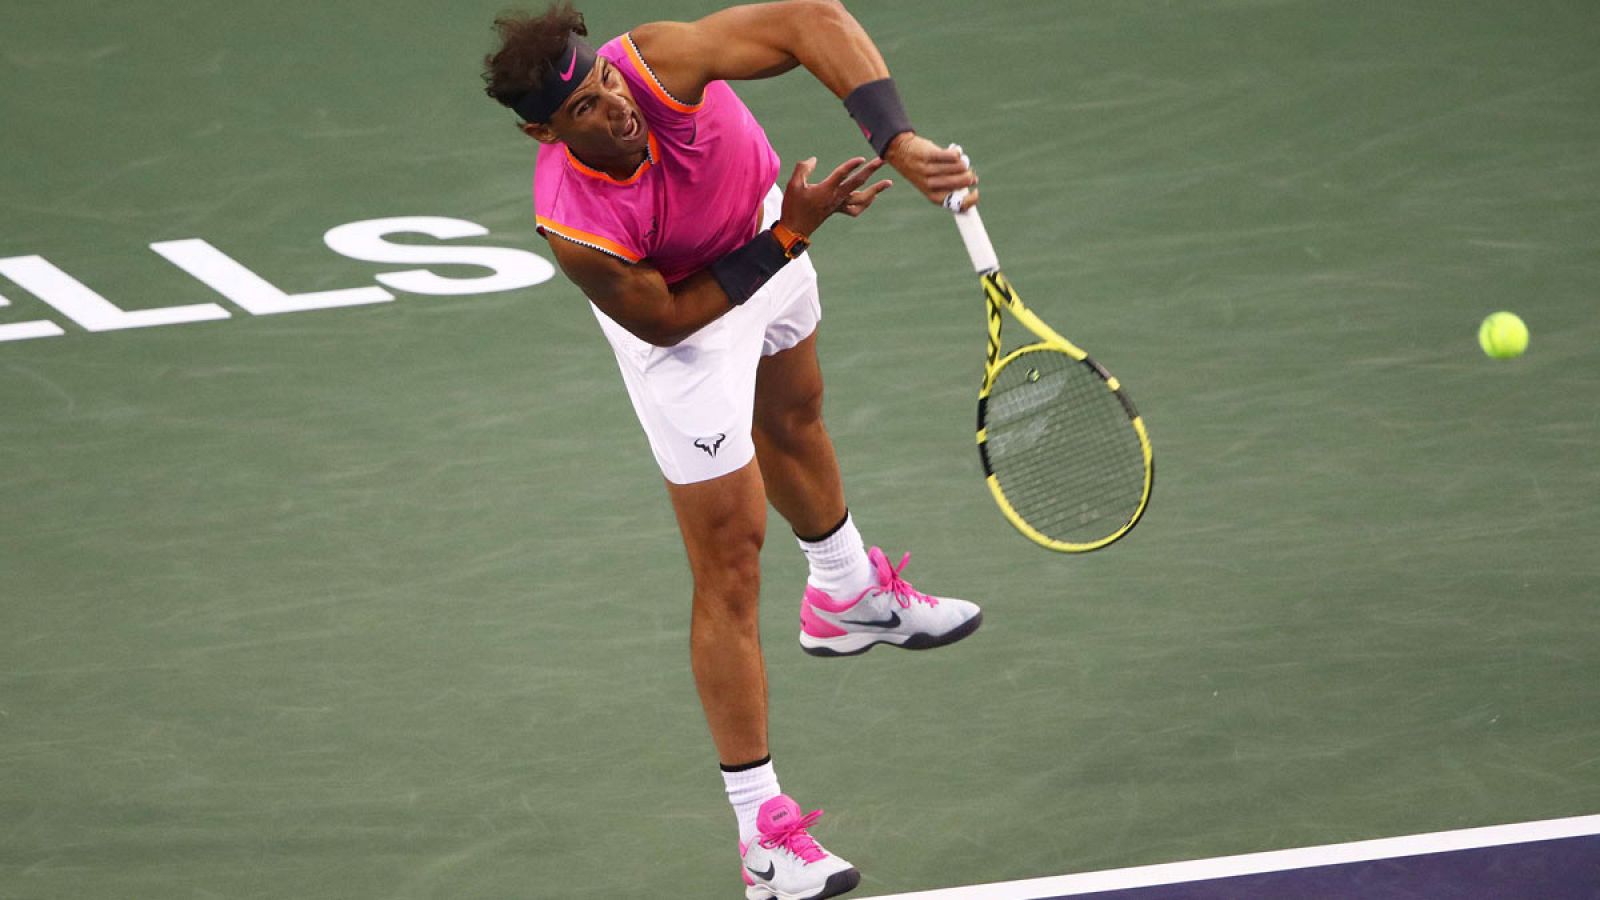 Imagen de Rafa Nadal durante el partido contra Jared Donaldson en el Indian Wells (EE.UU.) el domingo 10 de marzo de 2019.